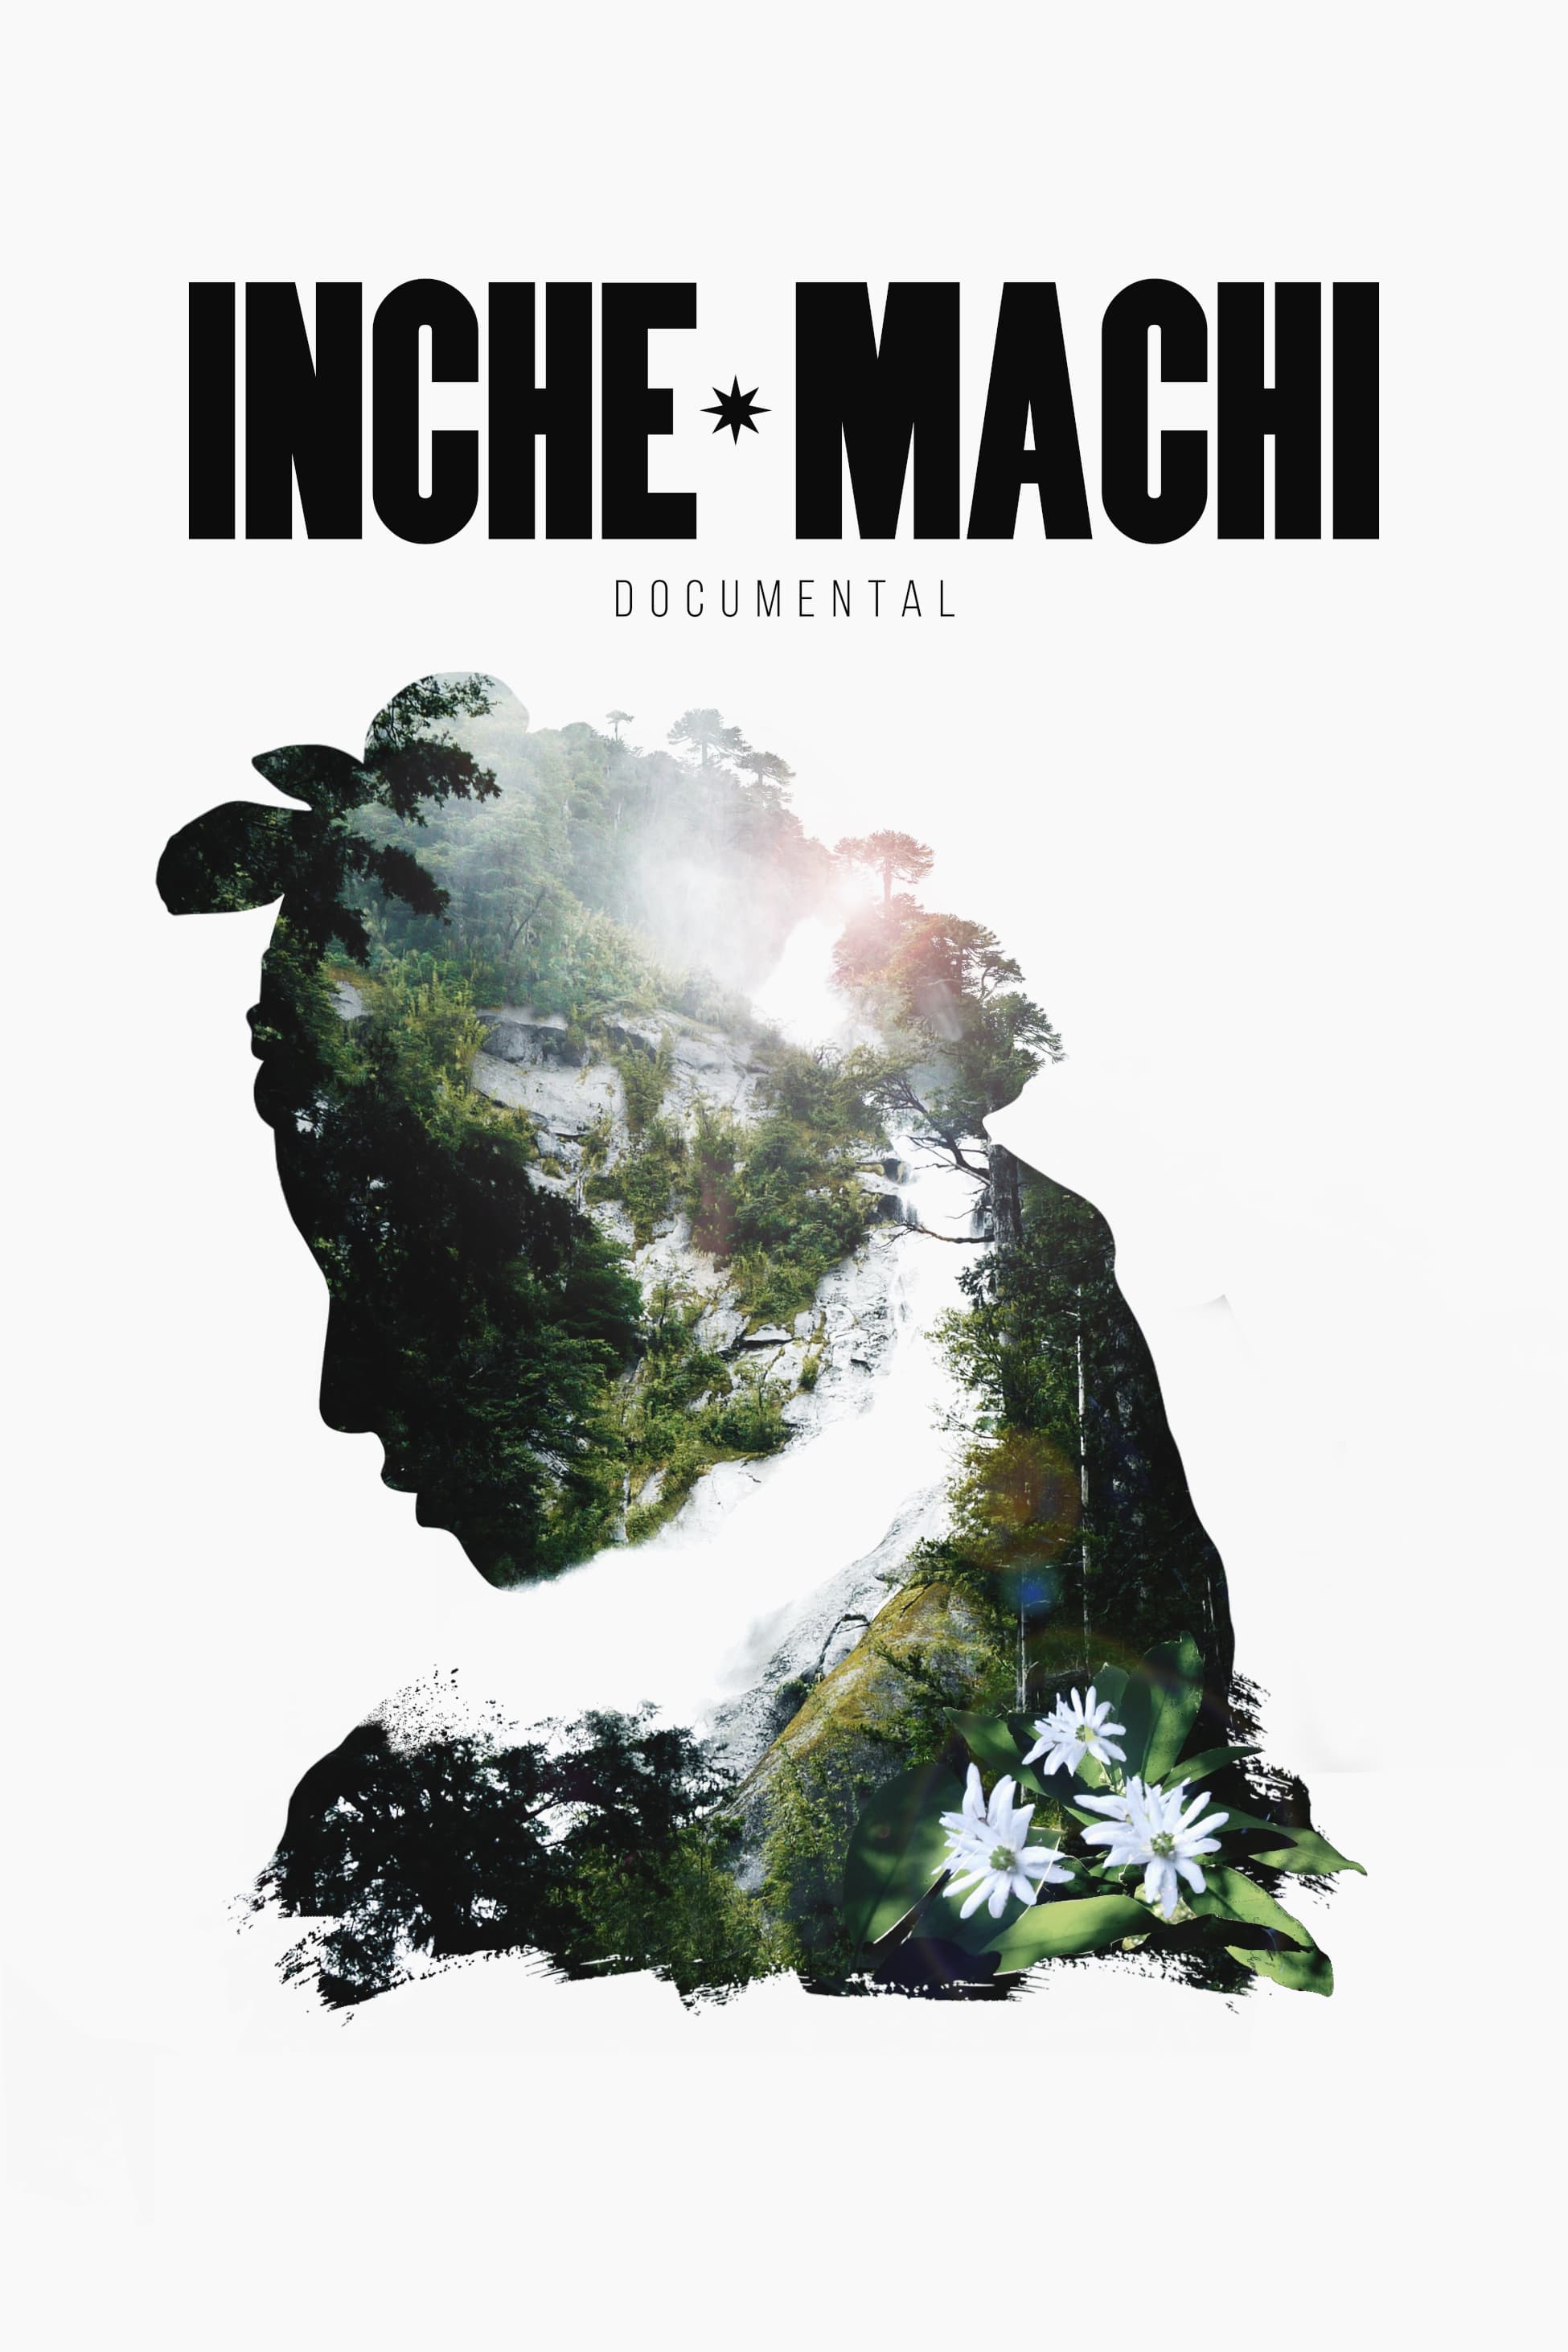 Inche Machi